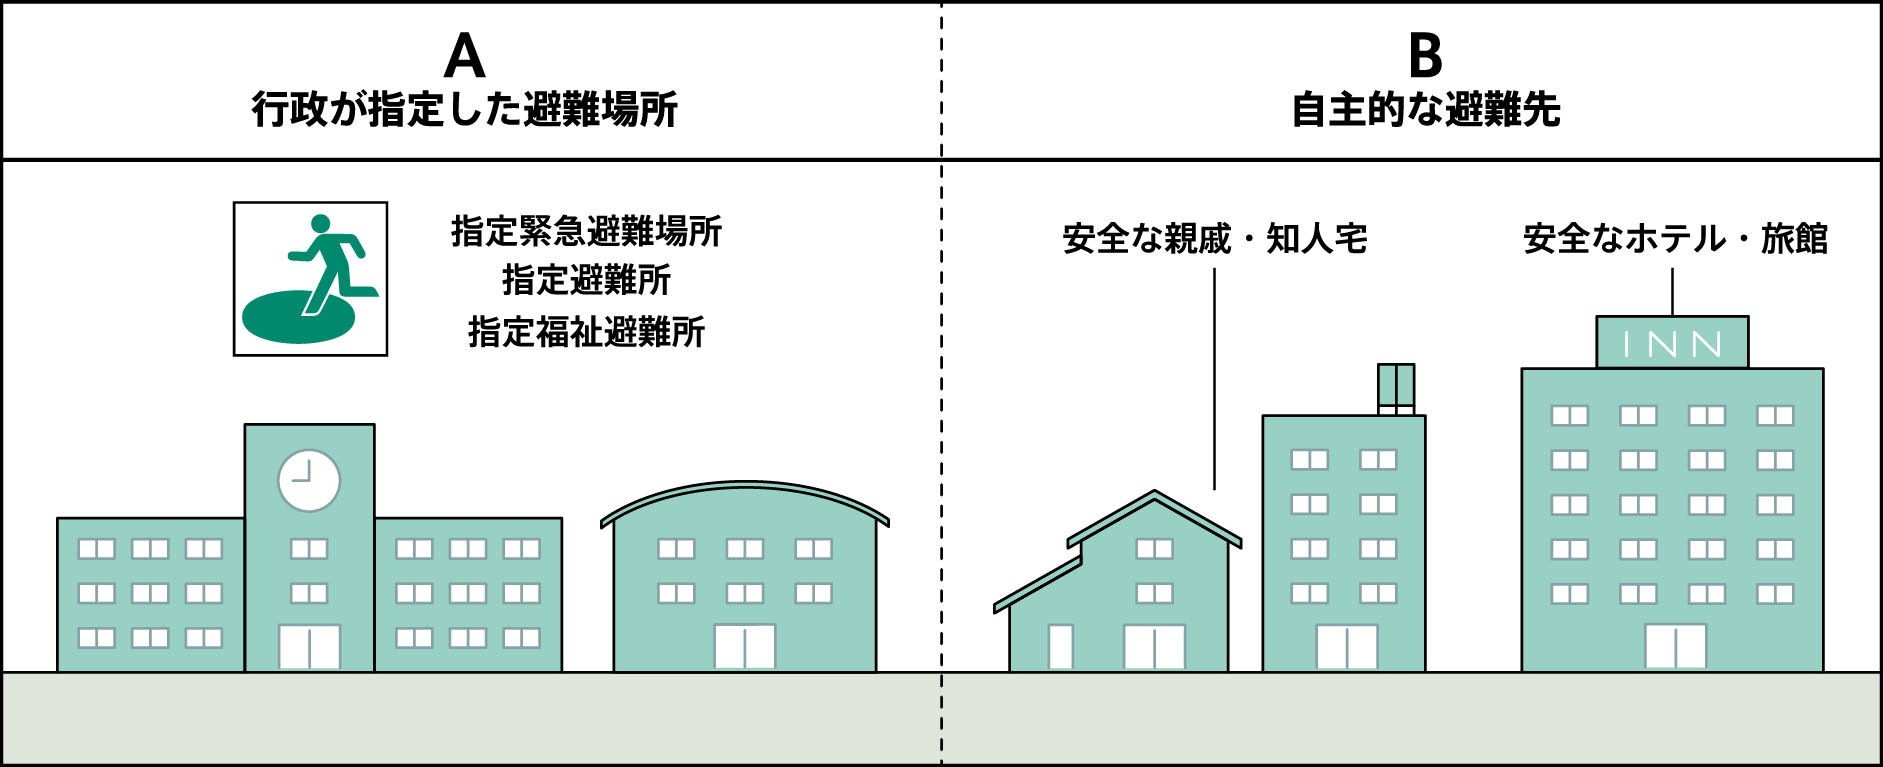 行政が指定した避難場所と自主的な避難先（親戚宅やホテルなど）を示したイラスト